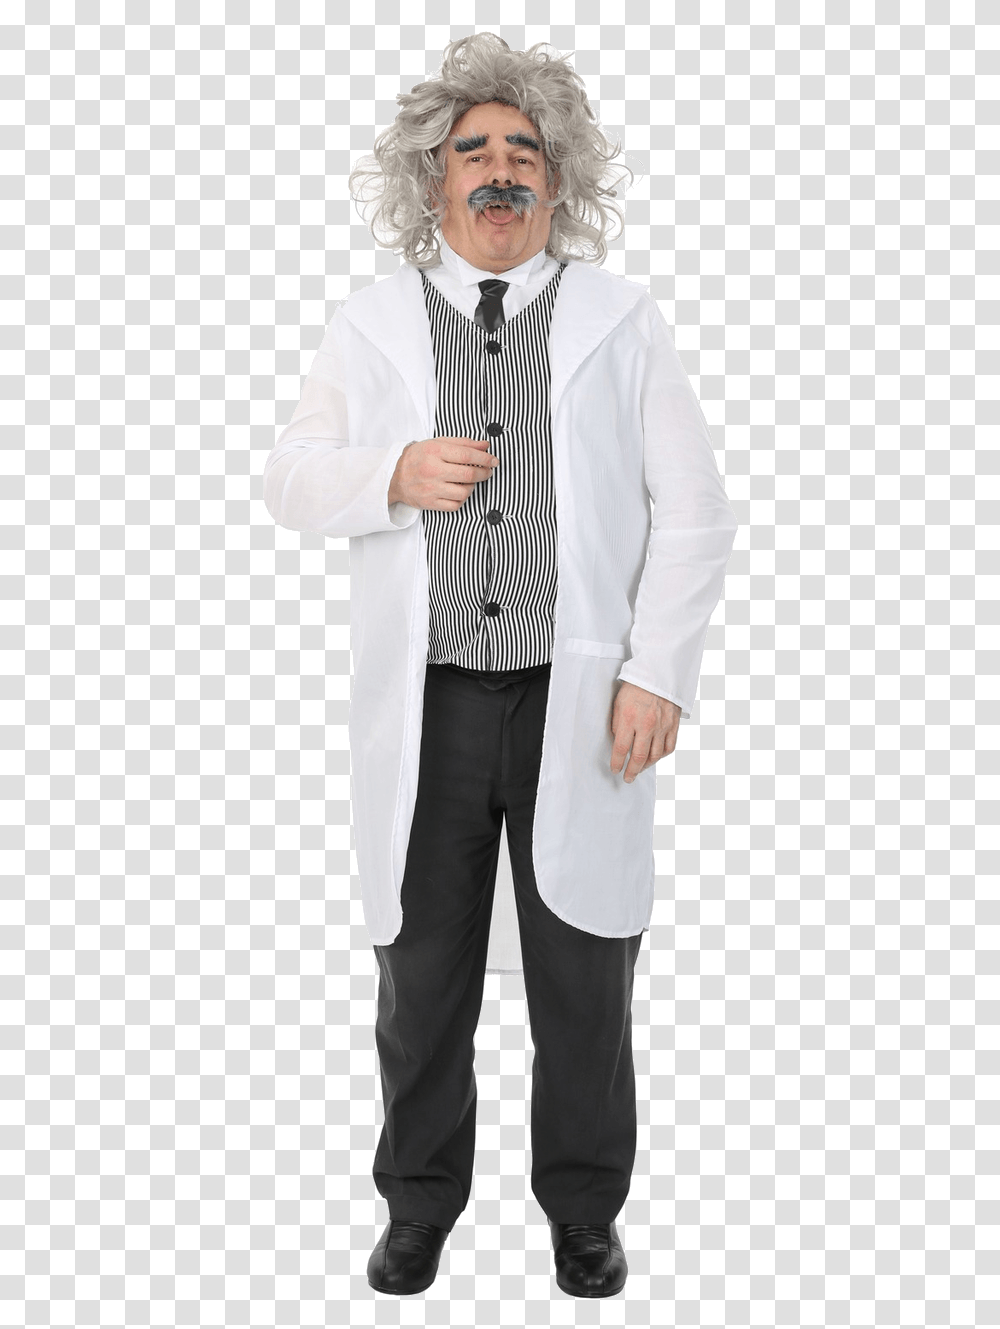 Albert Einstein Halloween Costume, Apparel, Shirt, Dress Shirt Transparent Png